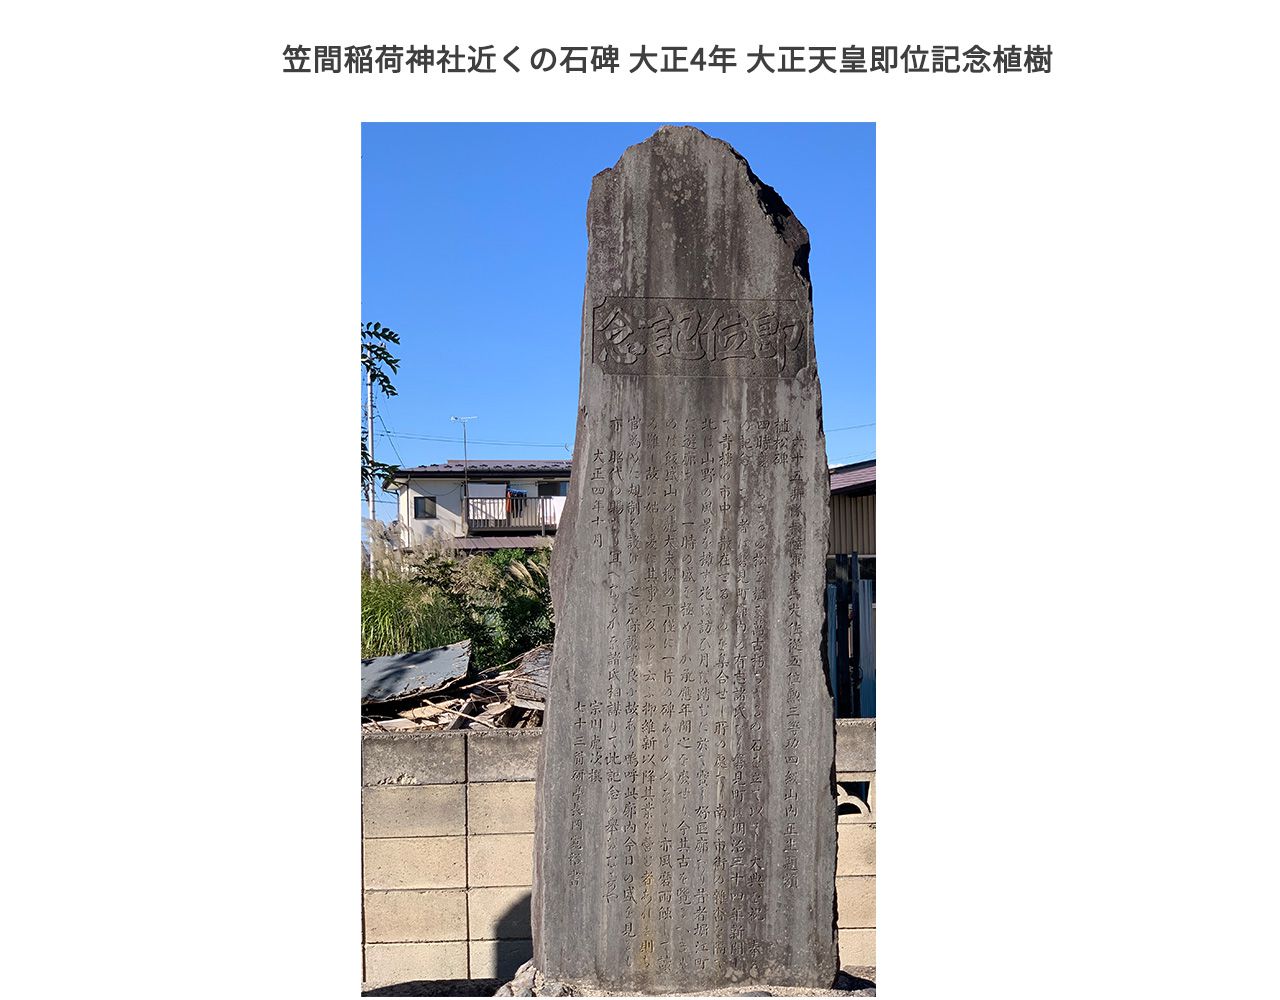 笠間稲荷神社に立つ石碑 大正4年 大正天皇即位記念植樹